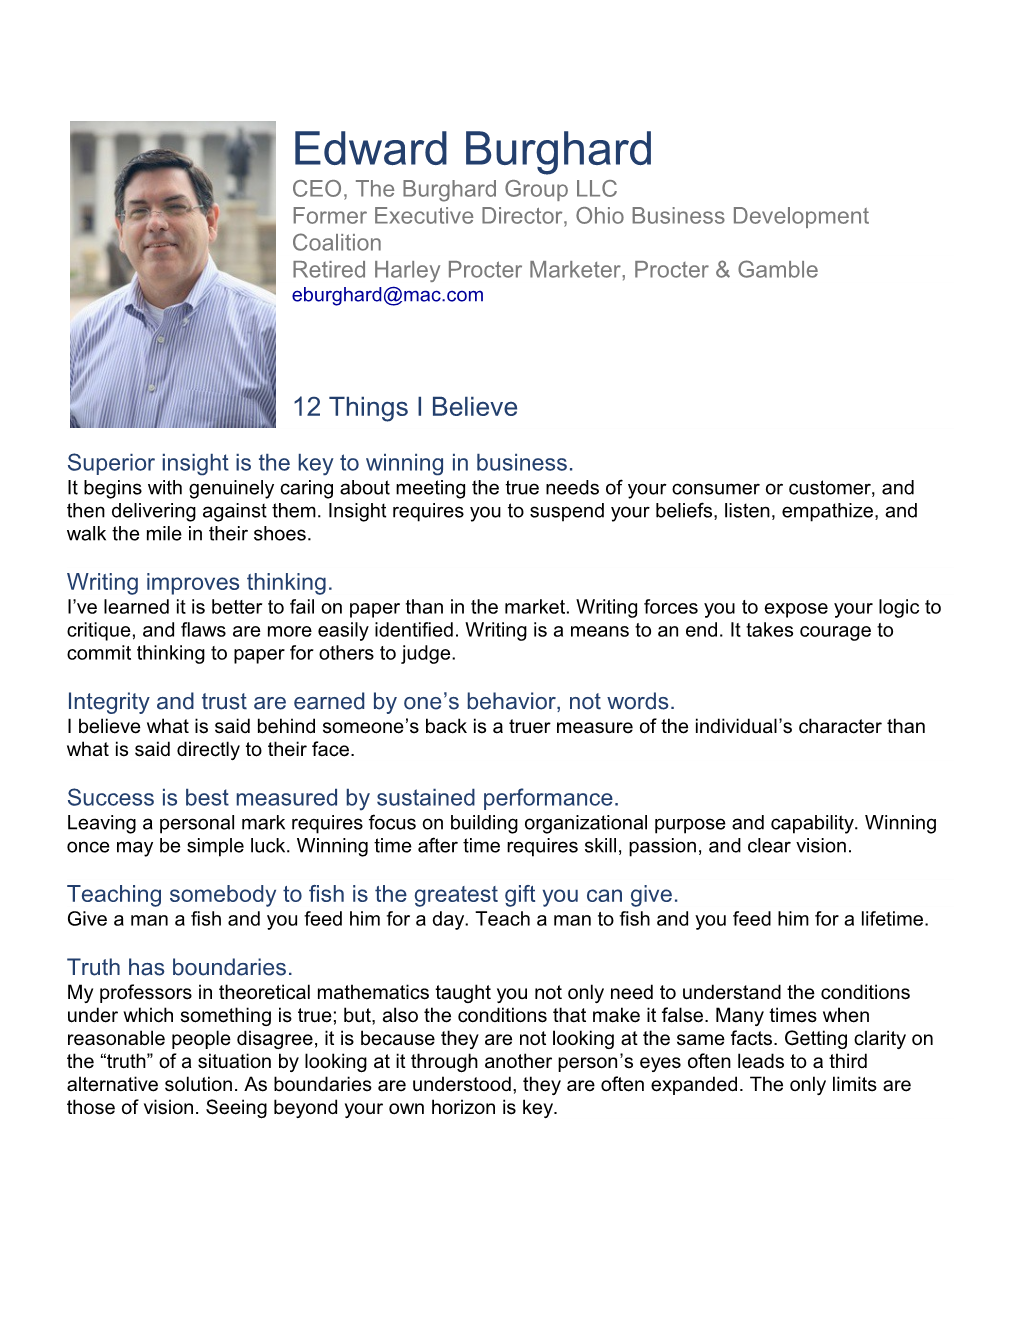 CEO, the Burghard Group LLC